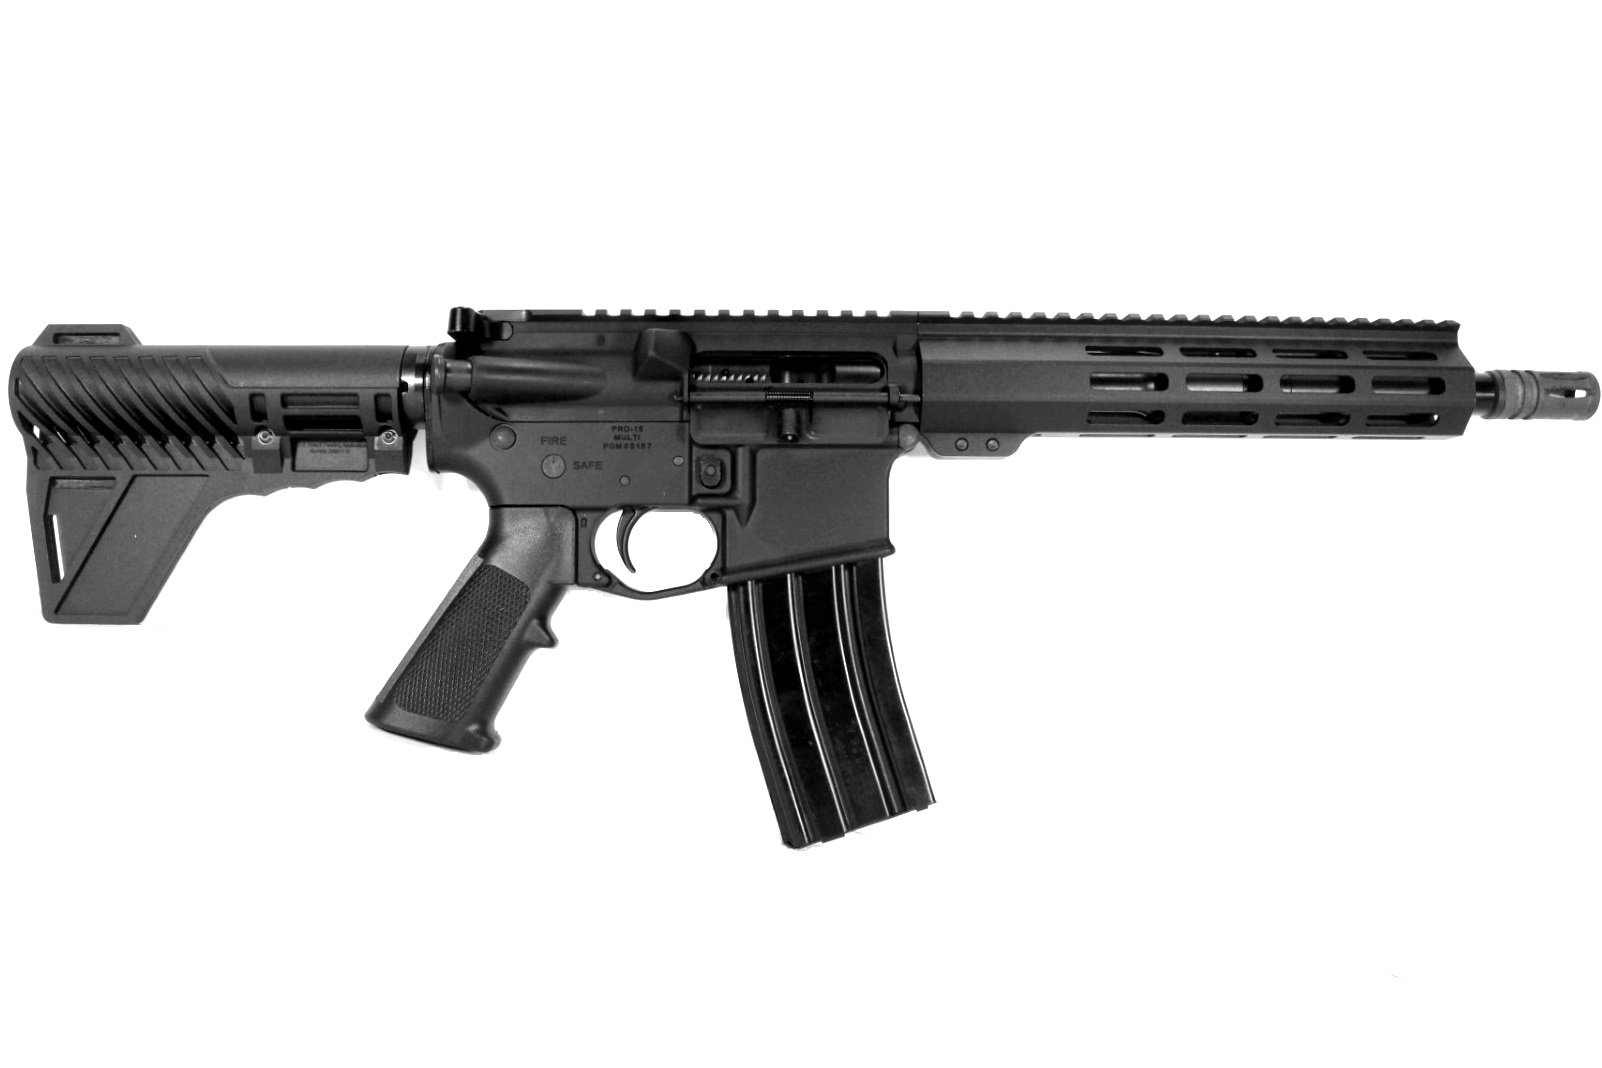 Pro2A Tactical's Patriot 10.5 inch AR-15 350 LEGEND M-LOK Complete Pistol